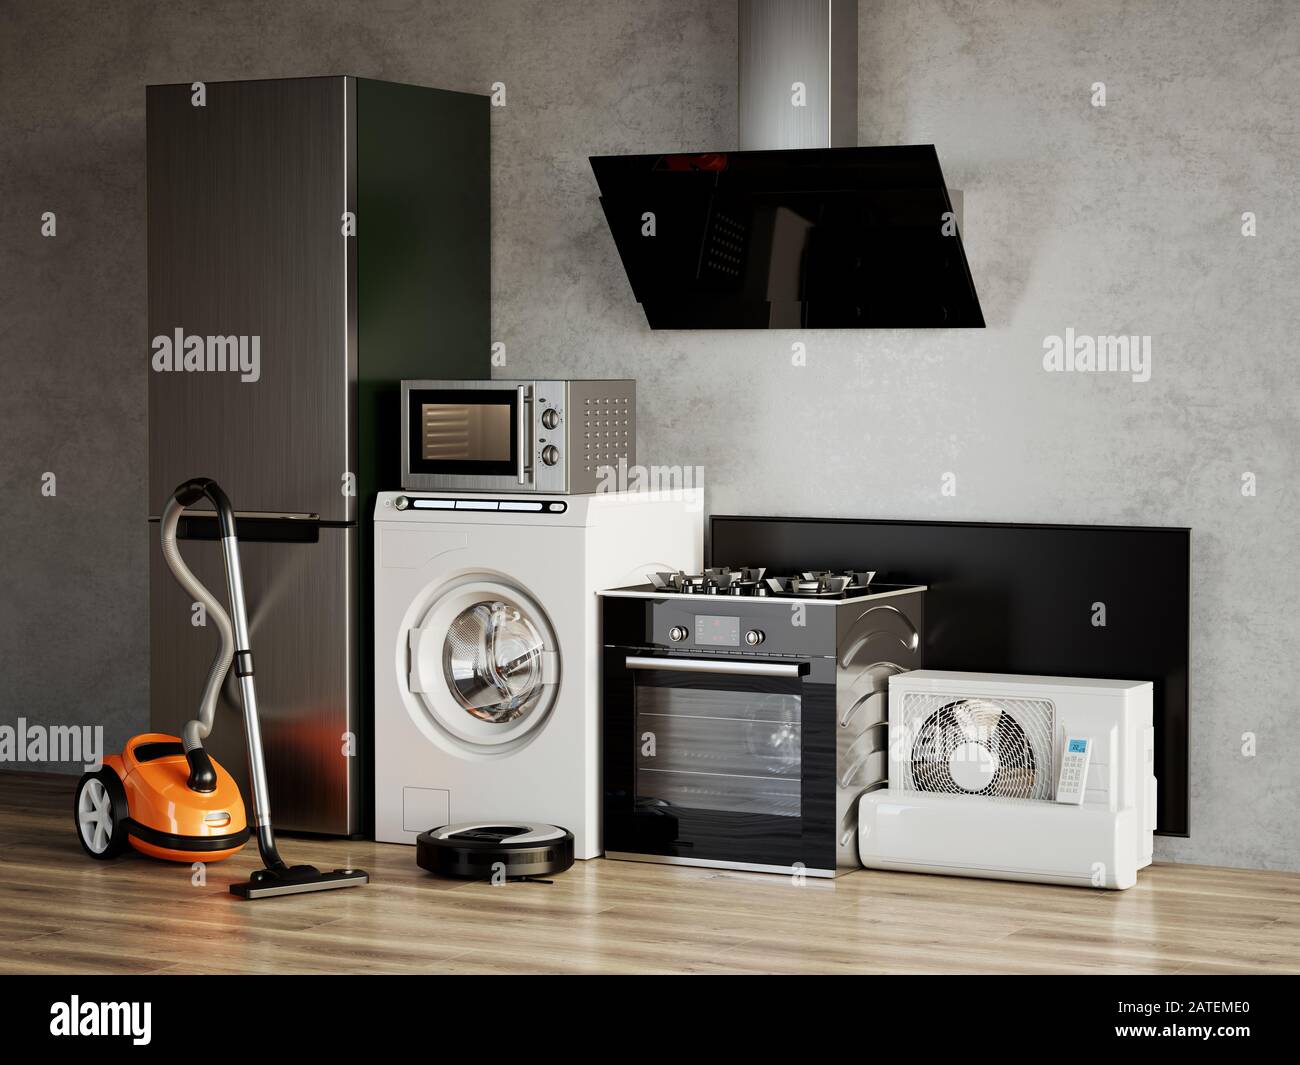 Appareils électroménagers. Réfrigérateur, lave-linge, four à micro-ondes,  congélateur, aspirateur, cuisinière à gaz, Smart TV, hotte, aspirateur  robotisé. rendu tridimensionnel Photo Stock - Alamy